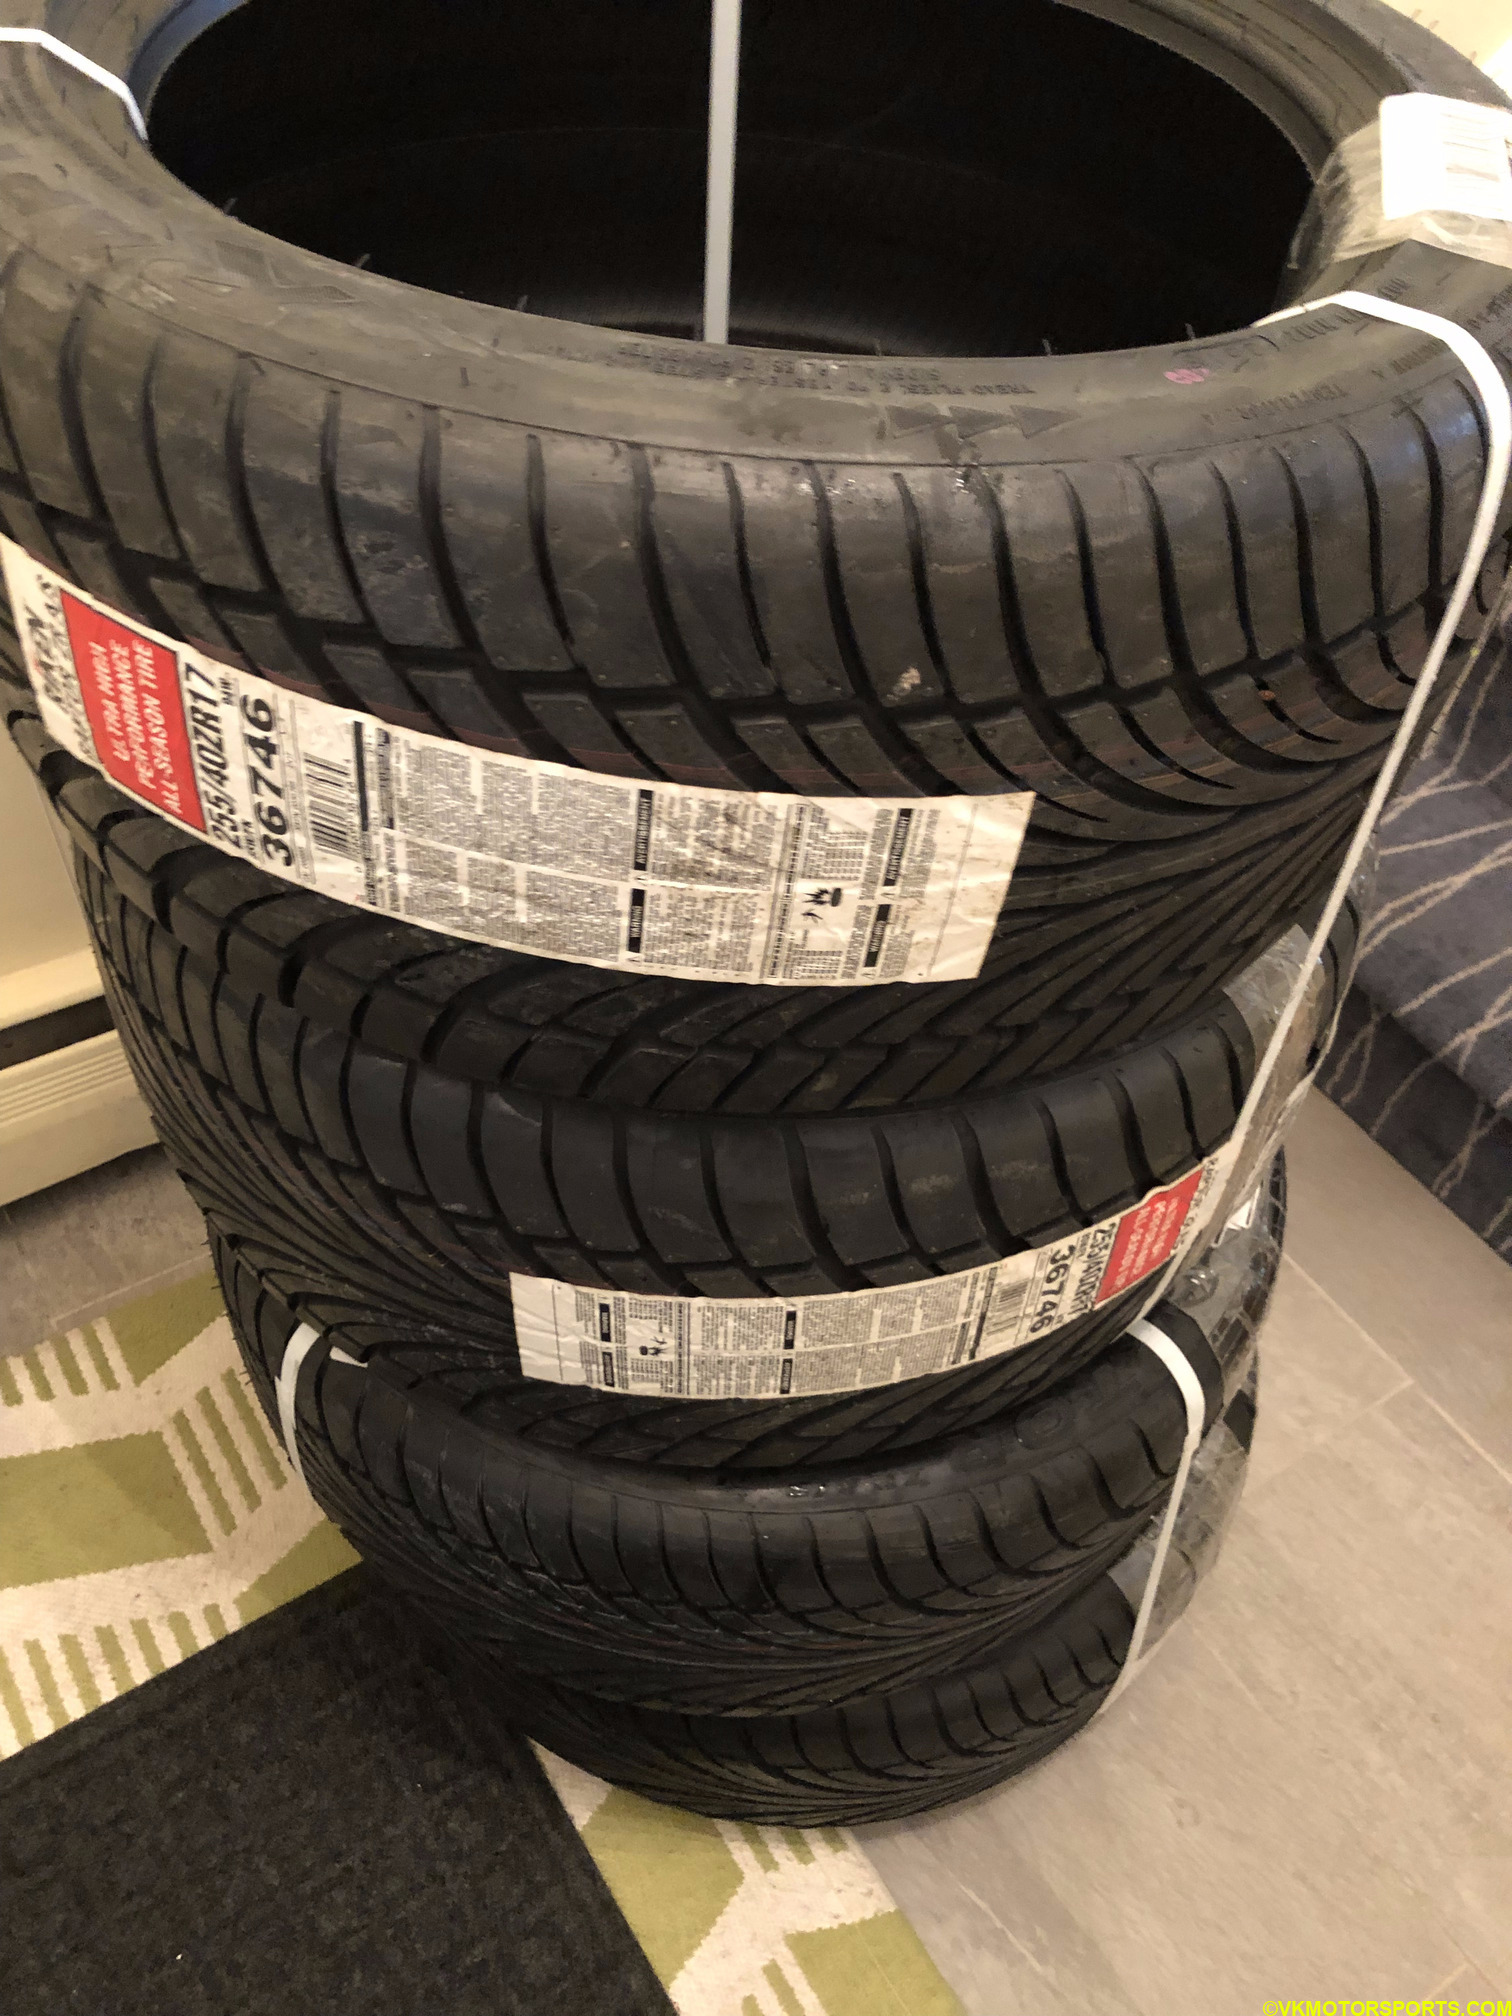 Figure 2. TireRack delivered tires